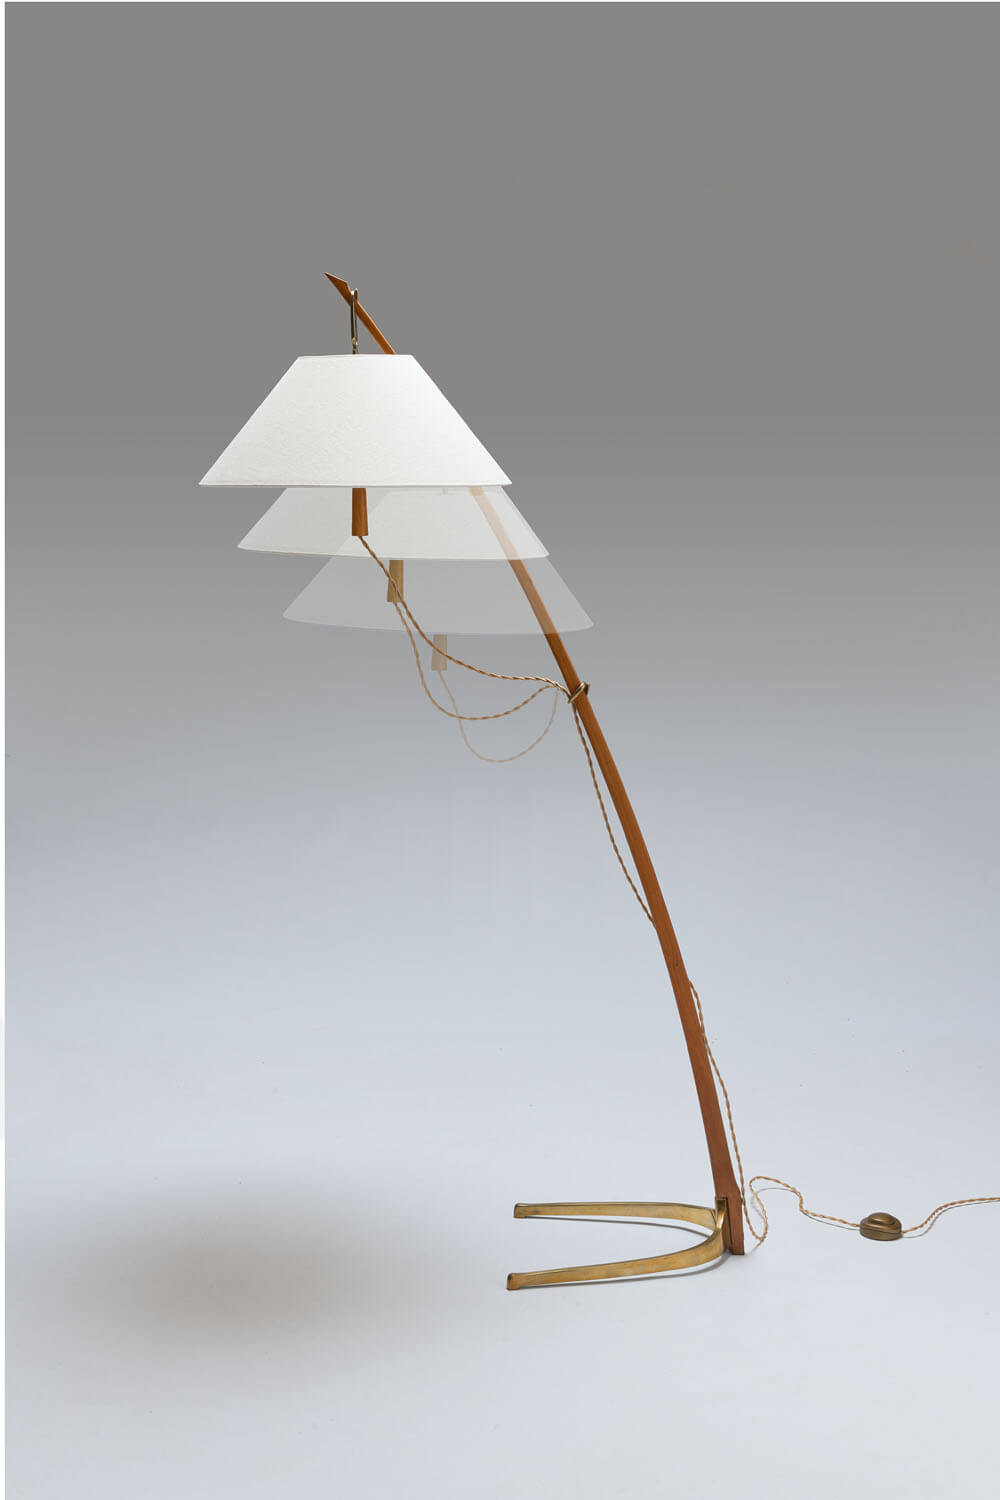 Vintage ‘Dornstab’ lamp